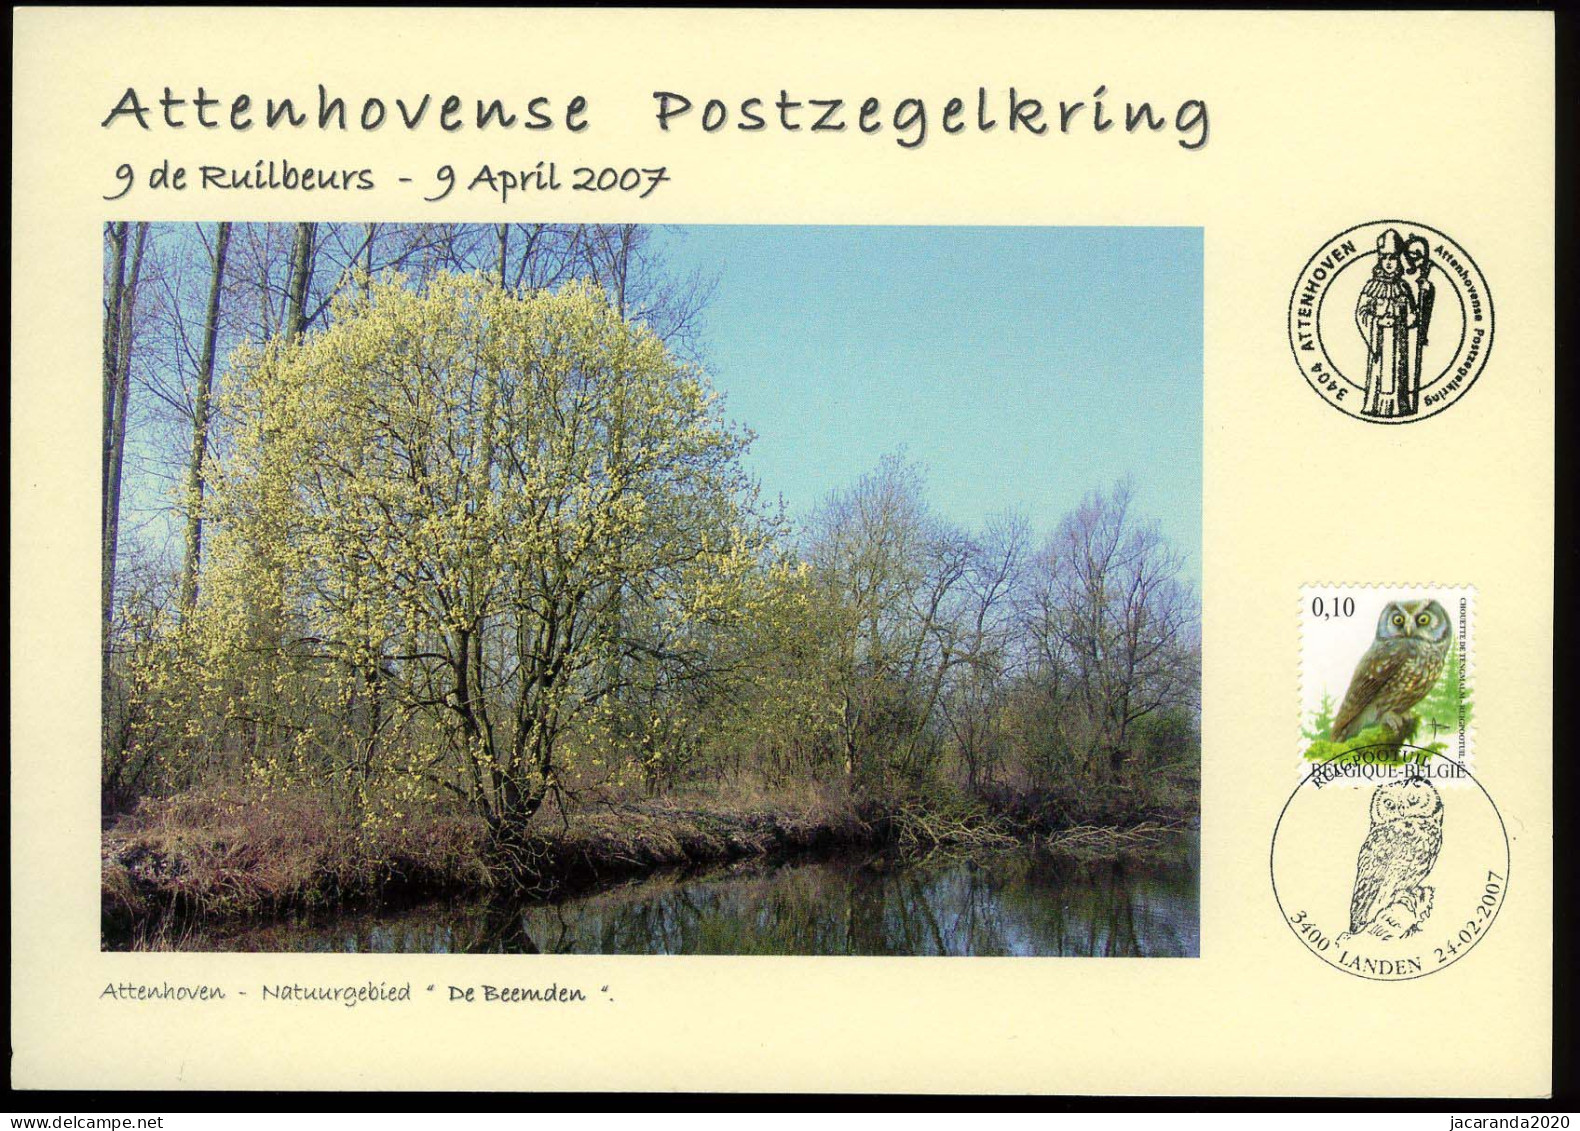 België 3624 - Ruigpootuil - Op Herdenkingskaart - 9de Ruilbeurs Attenhovense Postzegelkring 2007 - De Beemden - Buzin - Cartoline Commemorative - Emissioni Congiunte [HK]